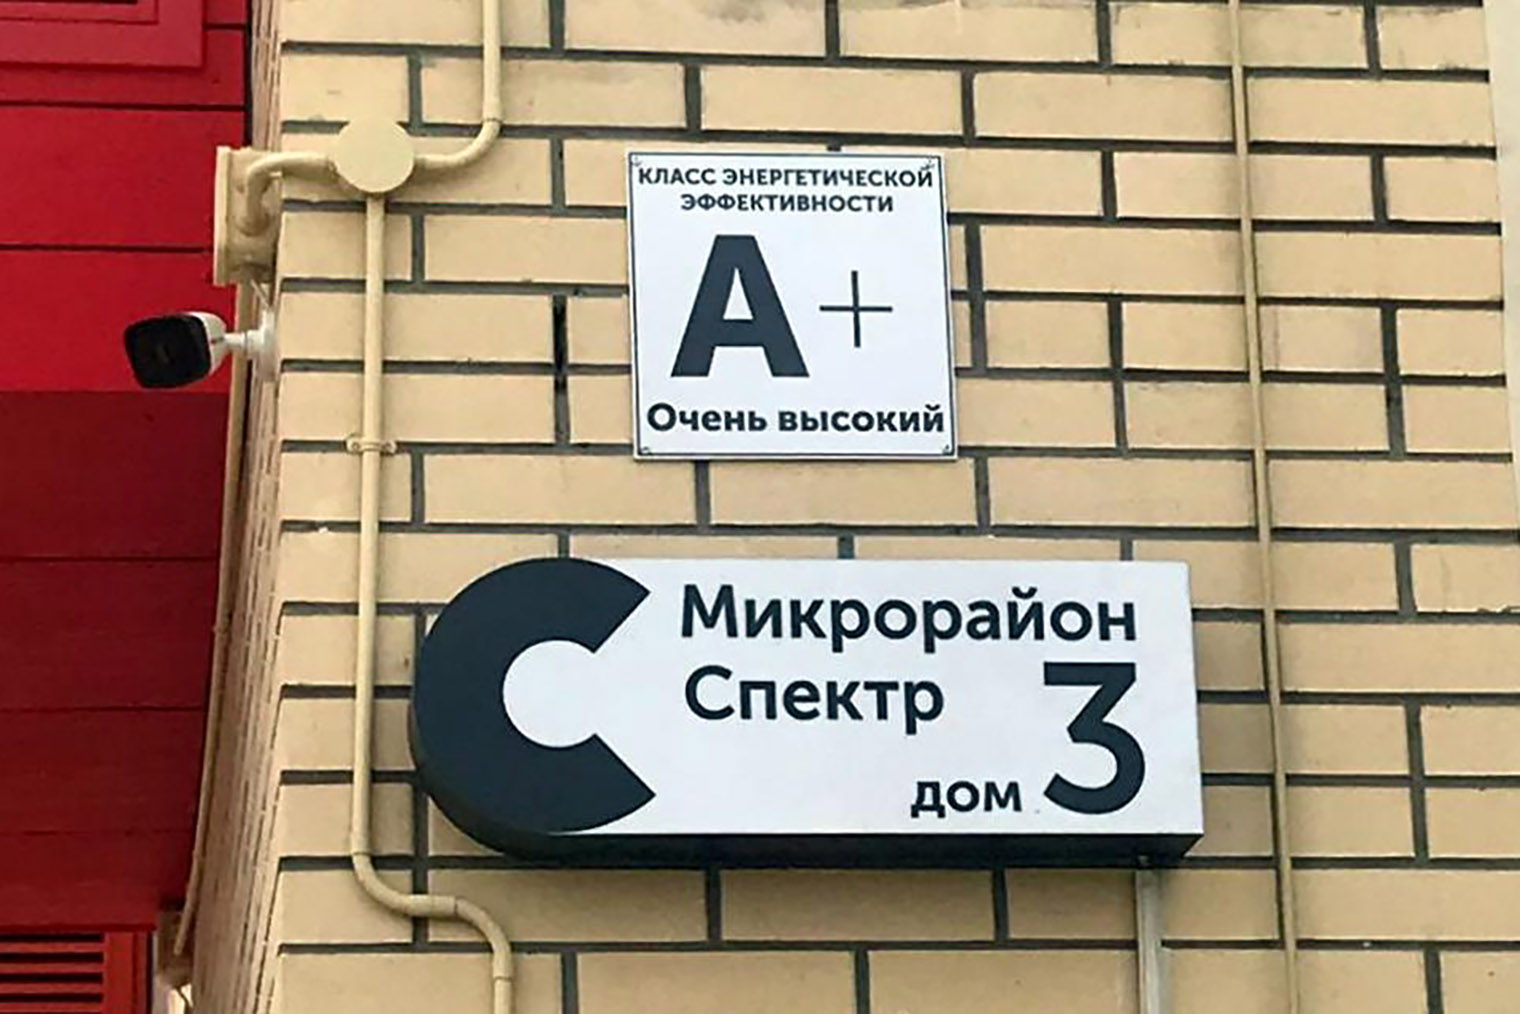 Табличка на доме микрорайона «Спектр» в Новосибирске. Источник: spektor54.ru